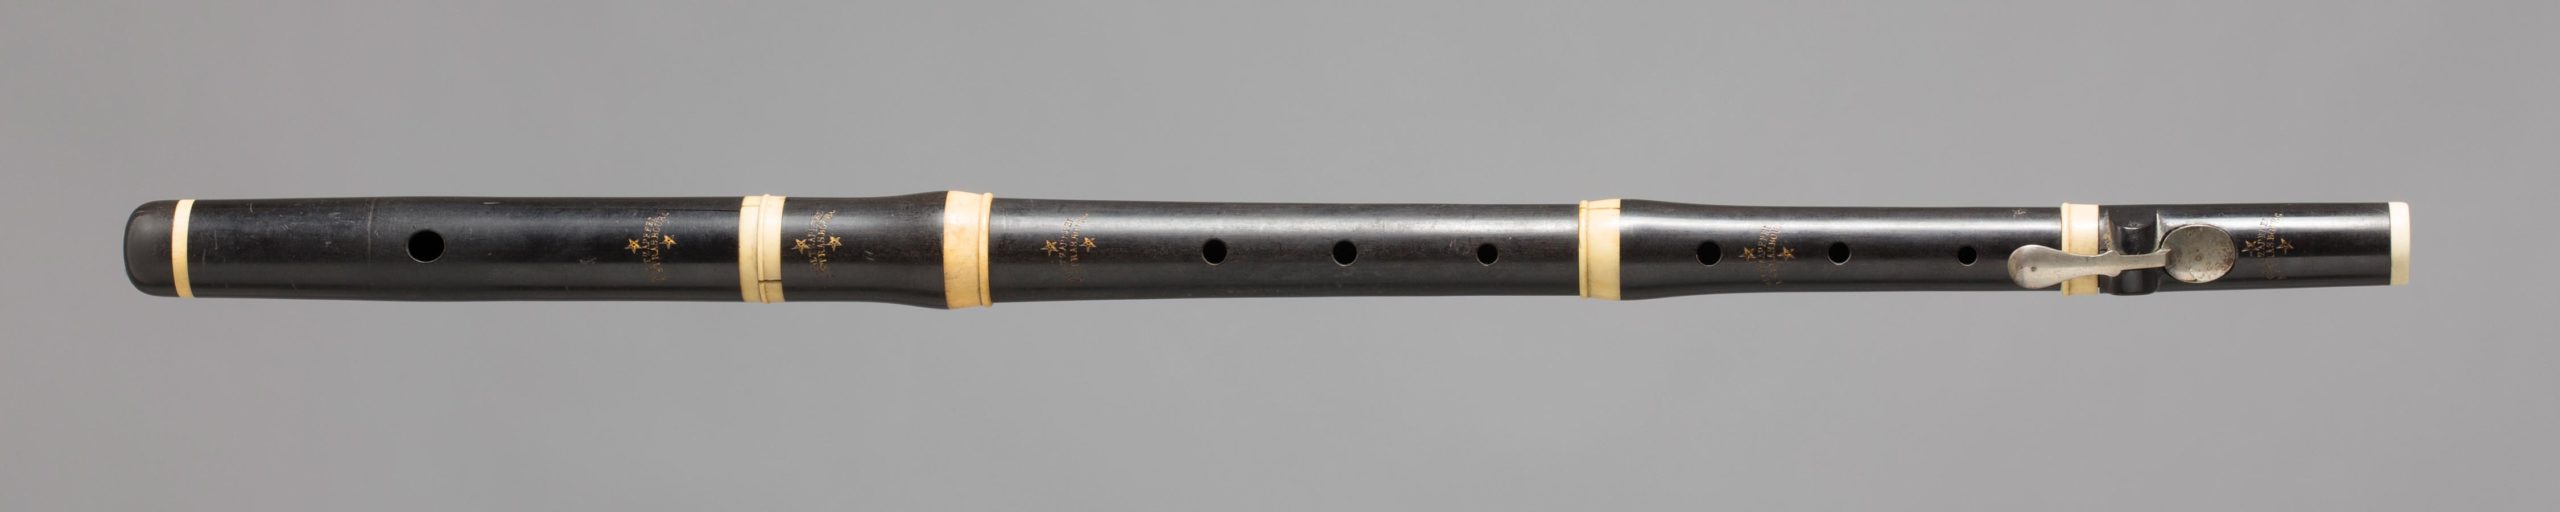 Flûte en ébène, bagues ivoire, une clef argent de HOLTZAPFFEL à Strasbourg. Début XIXème. Collection Samoyault